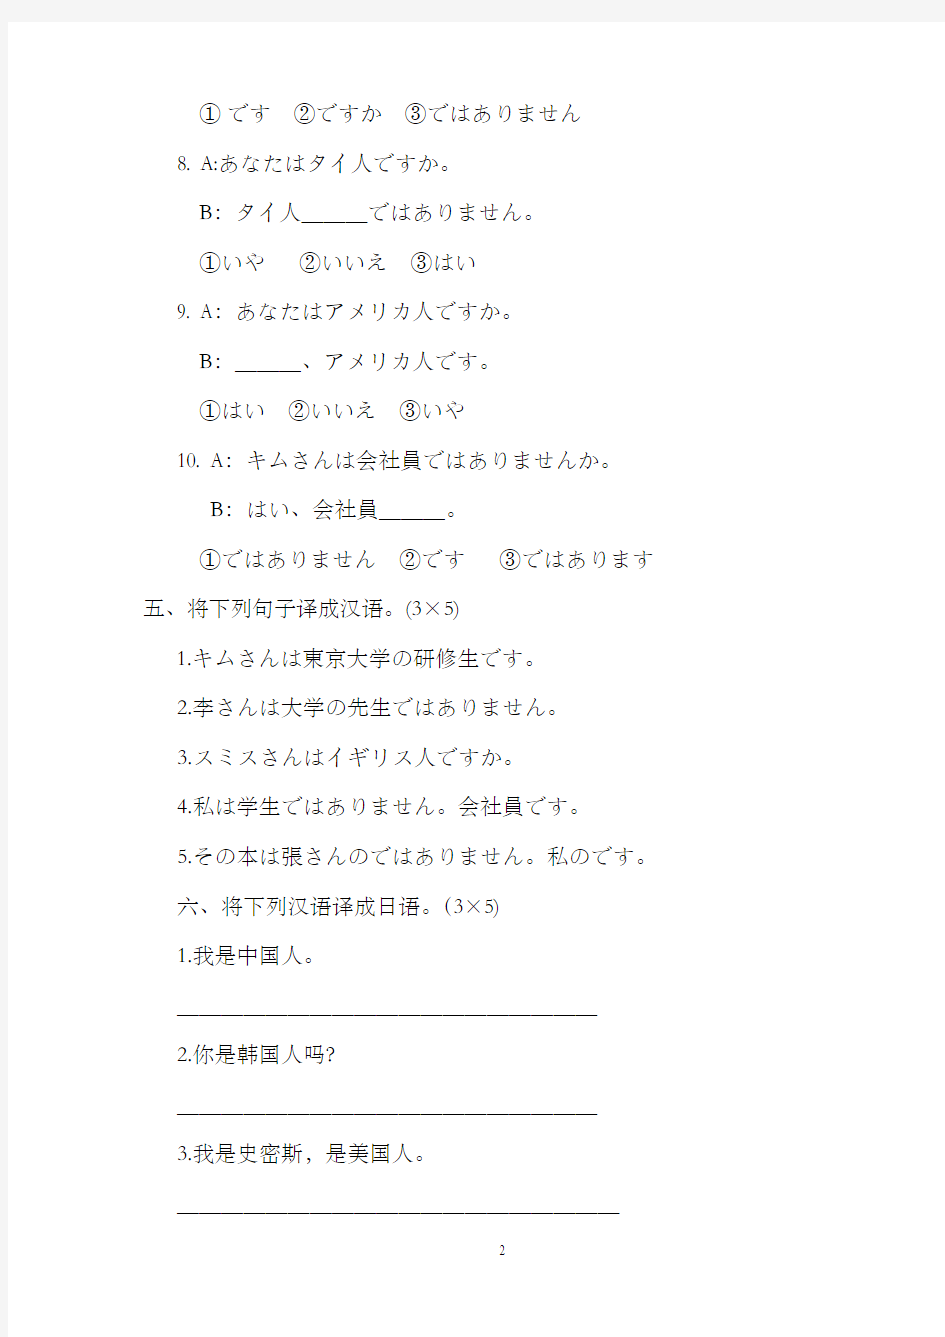 标准日本语同步测试卷_初级上(含答案)